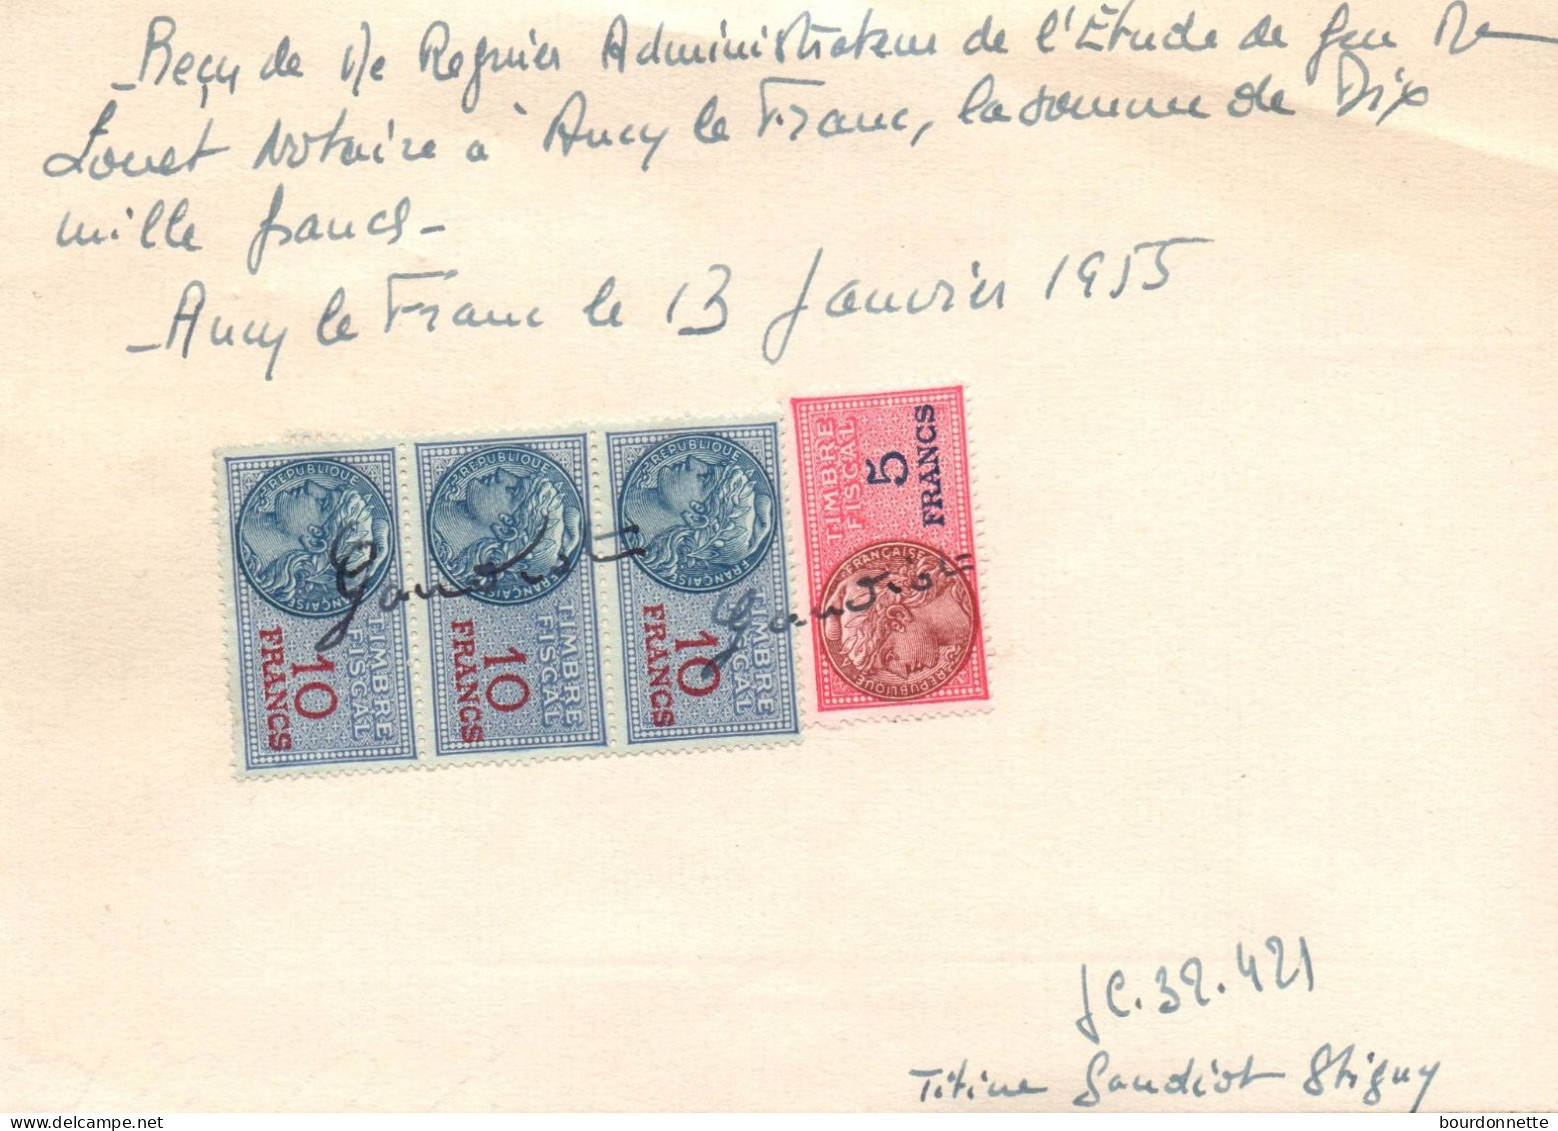 TIMBRES FISCAUX Sur Documents Ancy Le Franc Yonne 1955 STIGNY - Briefe U. Dokumente